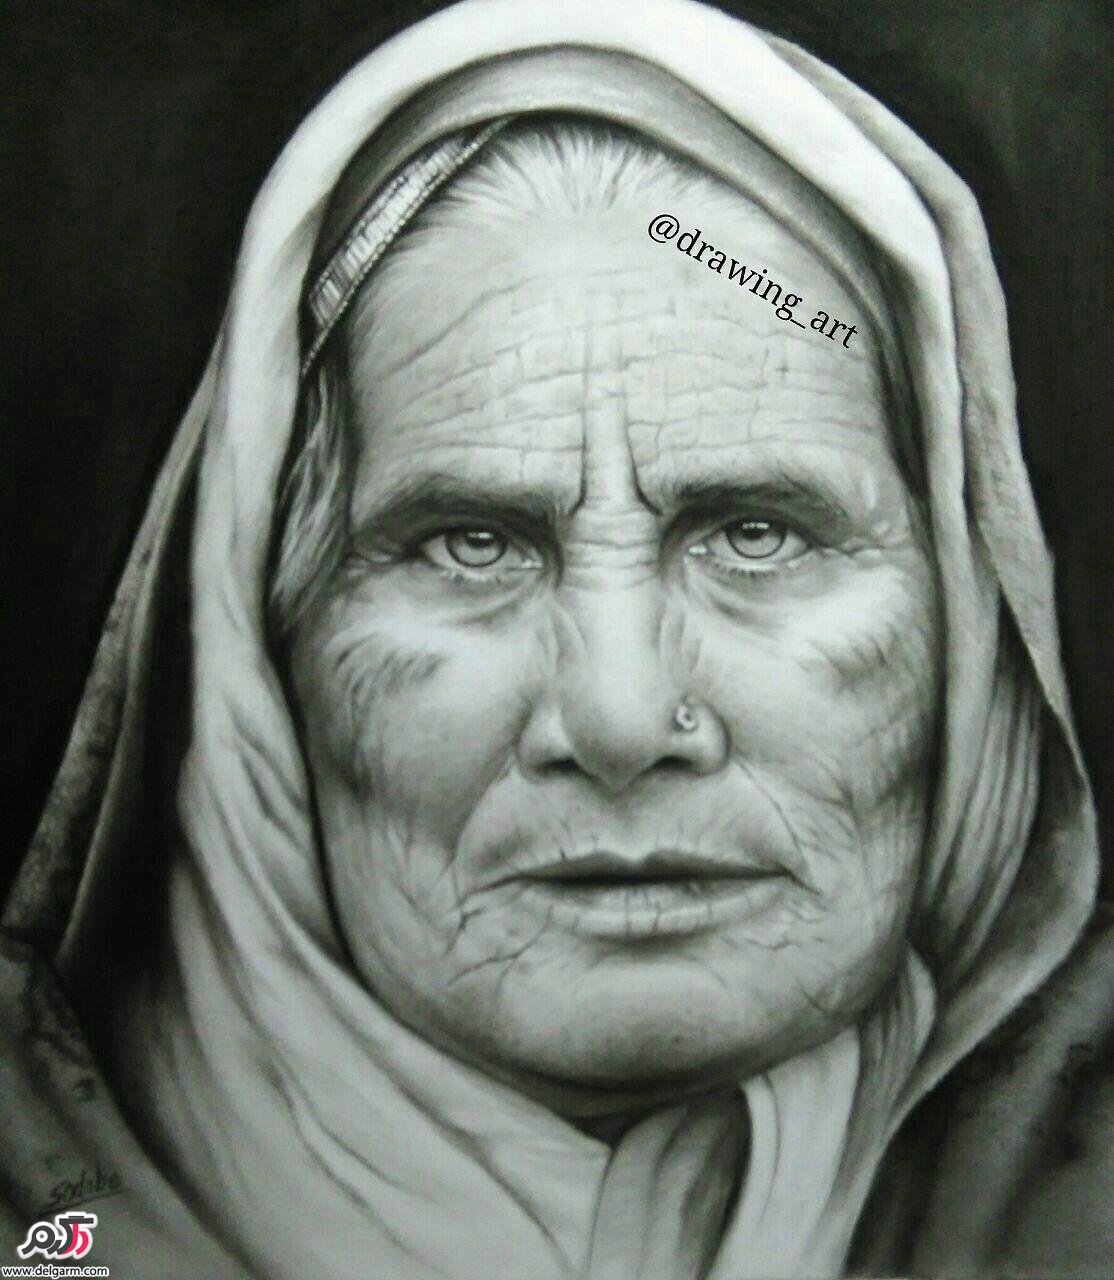 نقاشی چهره به سبک سیاه قلم با زغال و مداد کنته